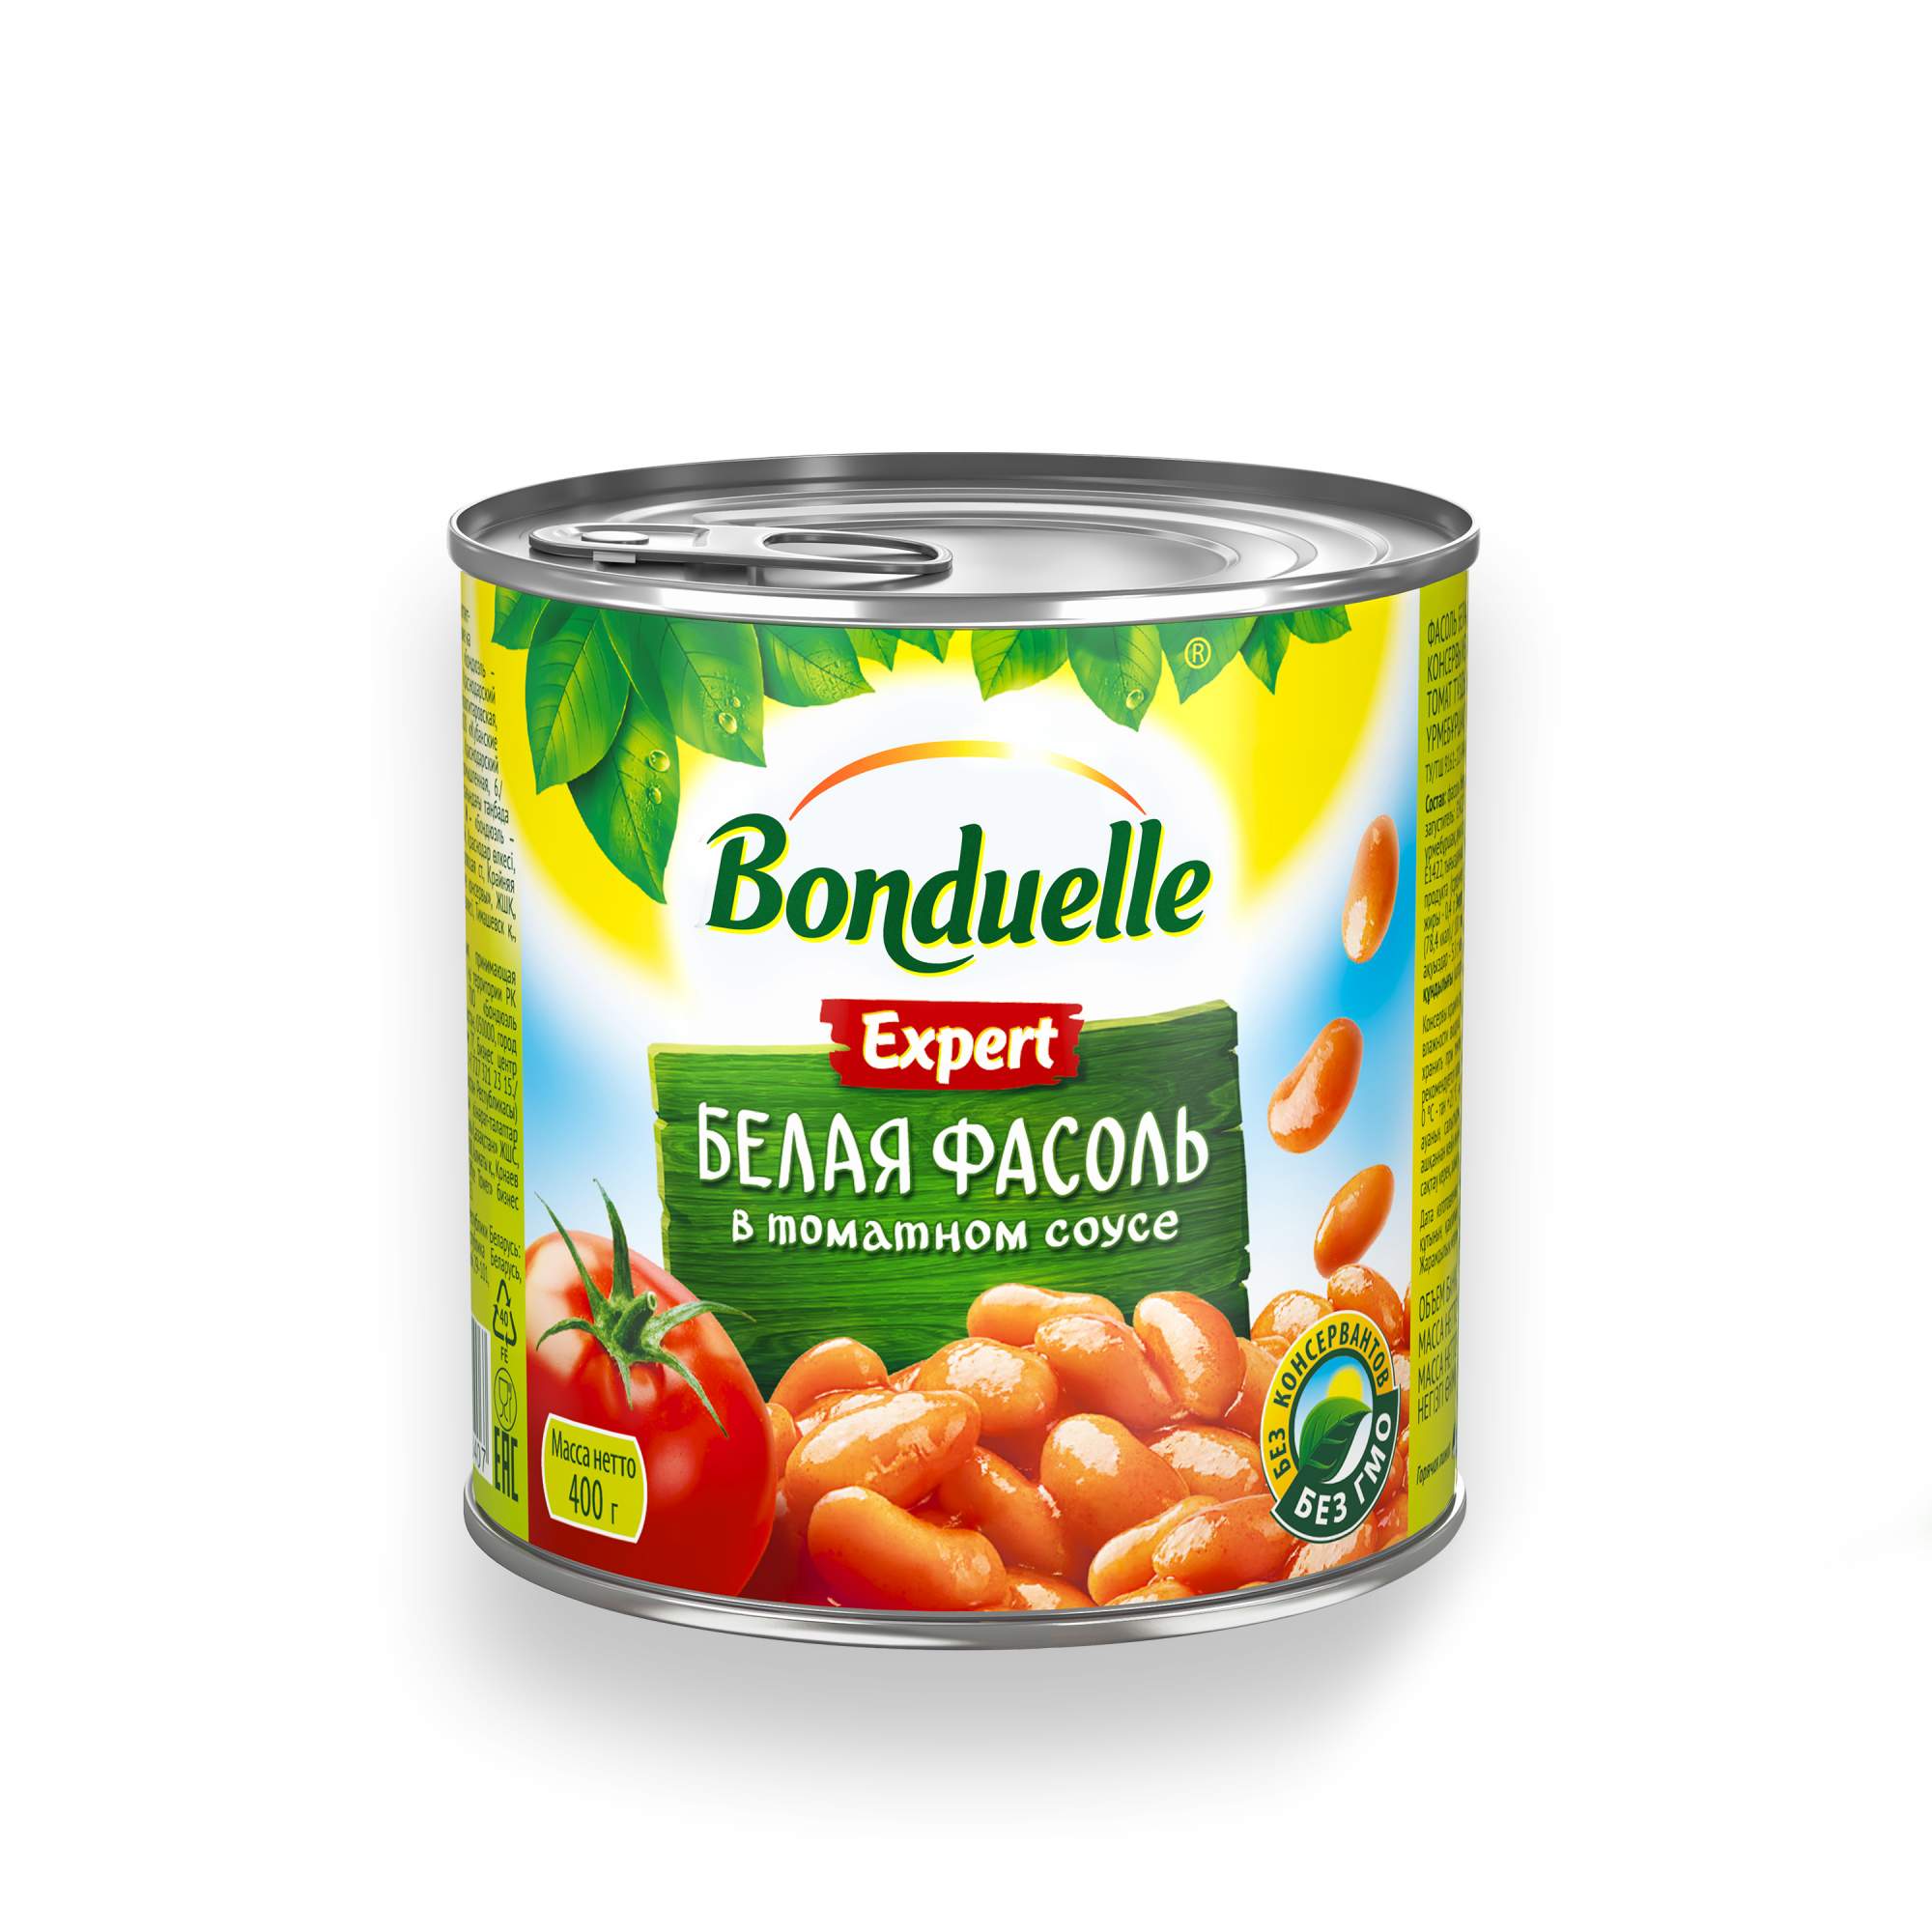 Фасоль Bonduelle белая в томатном соусе 400 г - купить в Мегамаркет Москва Пушкино, цена на Мегамаркет